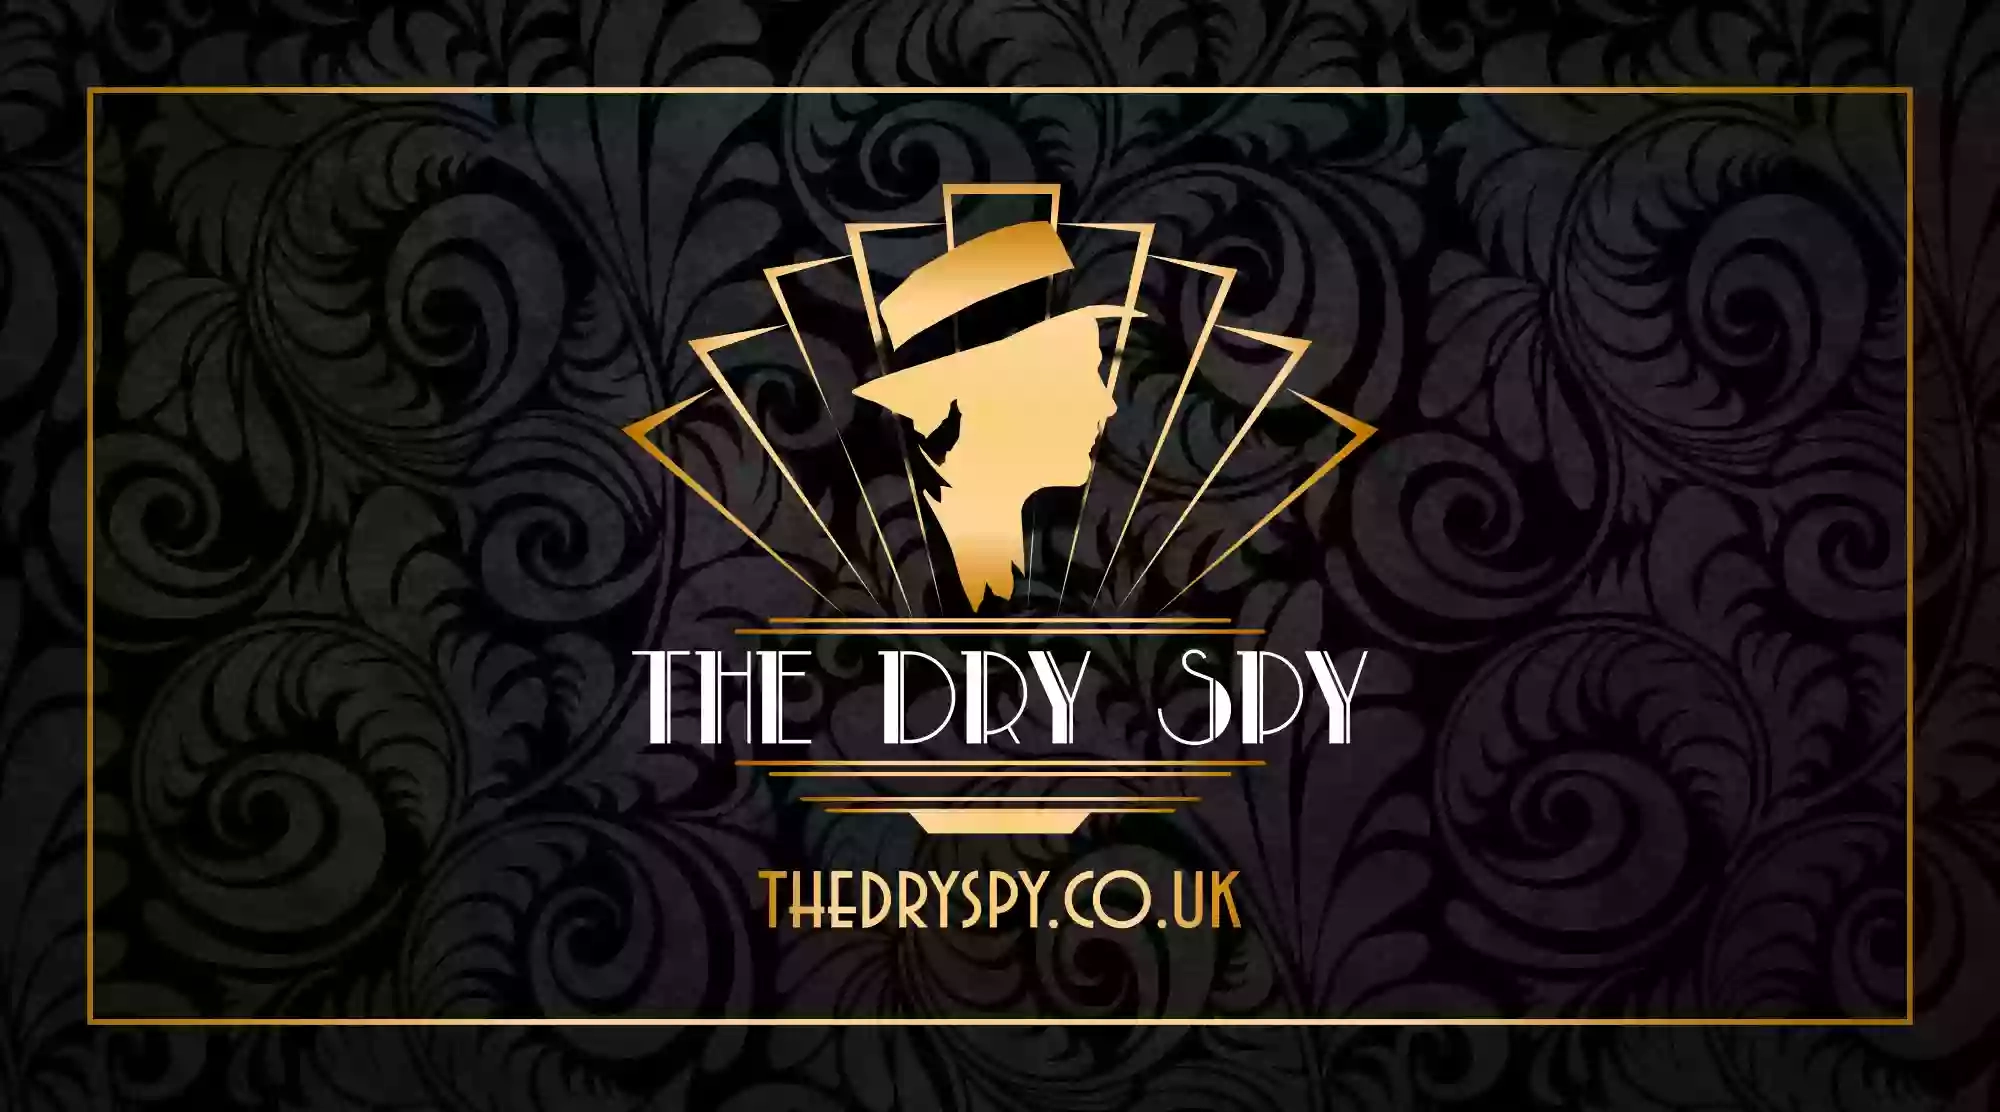 The Dry Spy